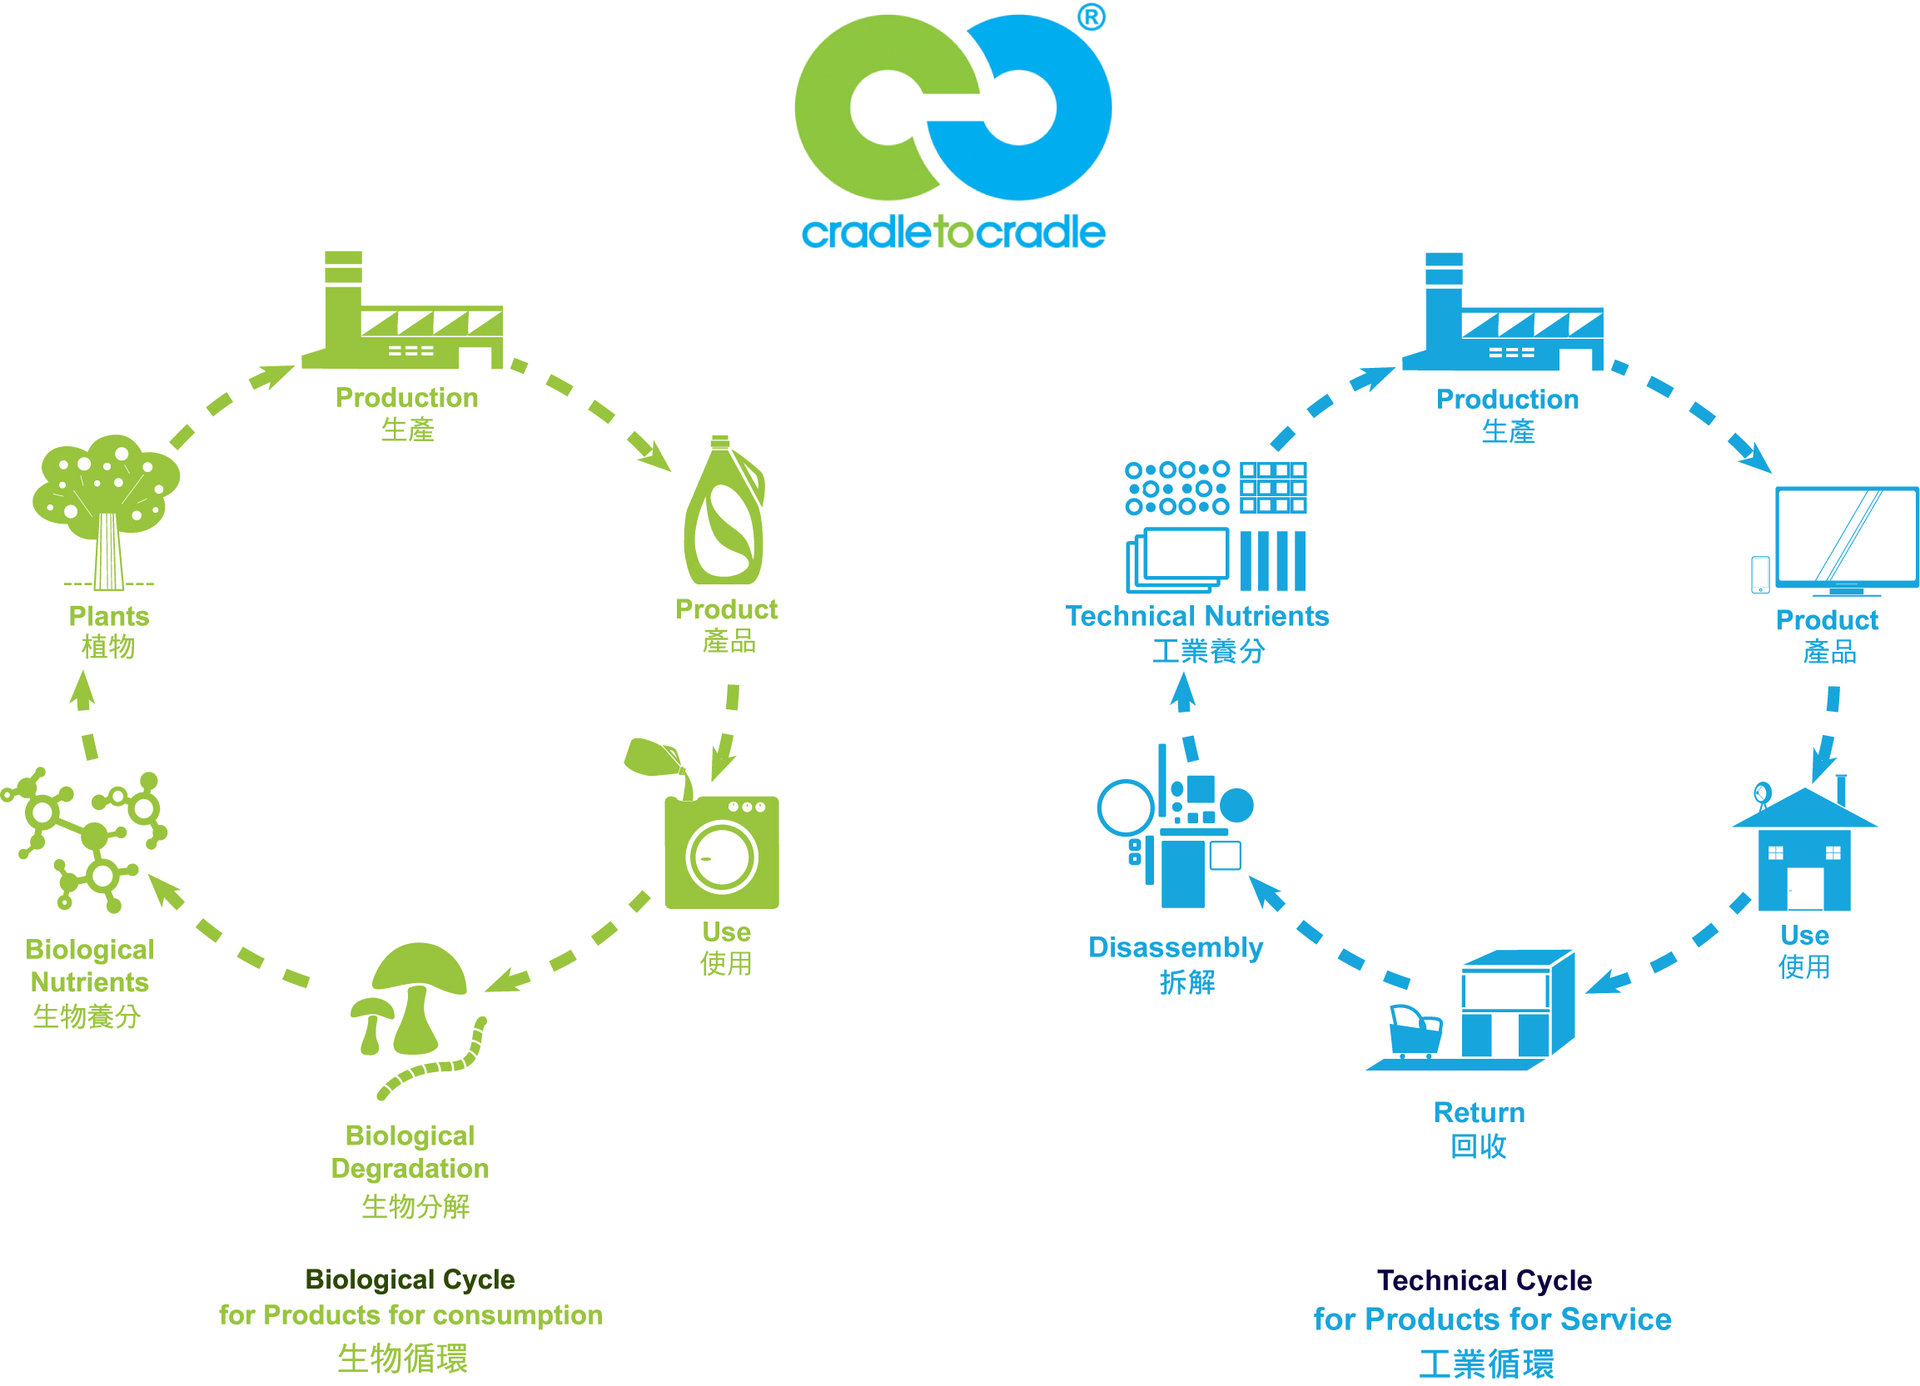 循環系統分類為「生物循環」及「工業循環」兩種循環。